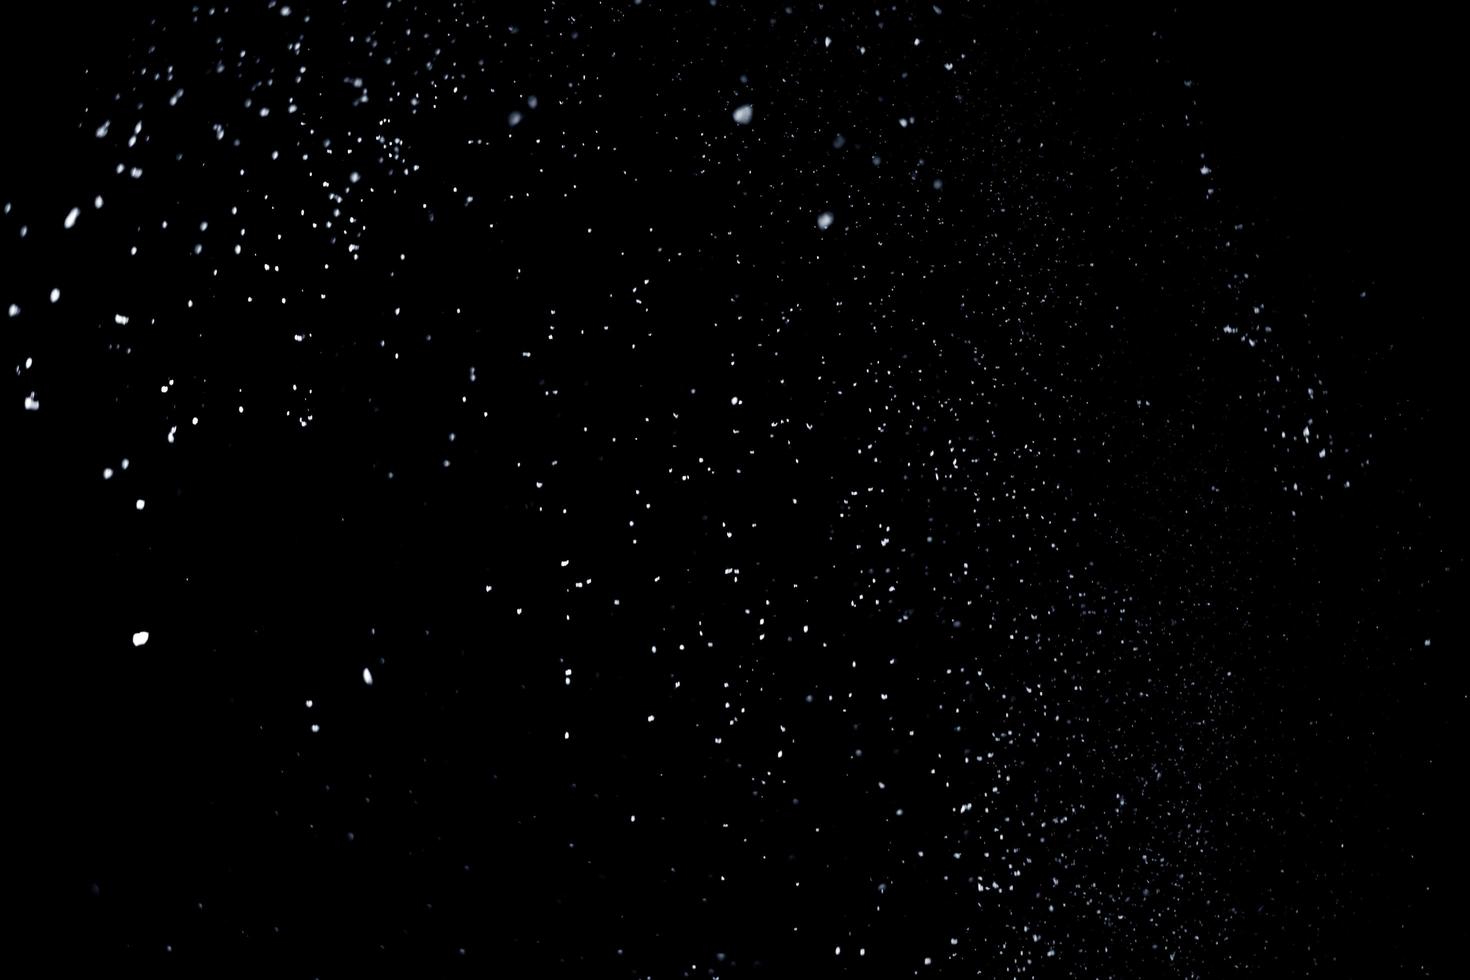 las partículas blancas sobre fondo negro que representan una nevada. metraje de superposición de nieve para dar un efecto de congelación o invierno a la presentación del video. foto